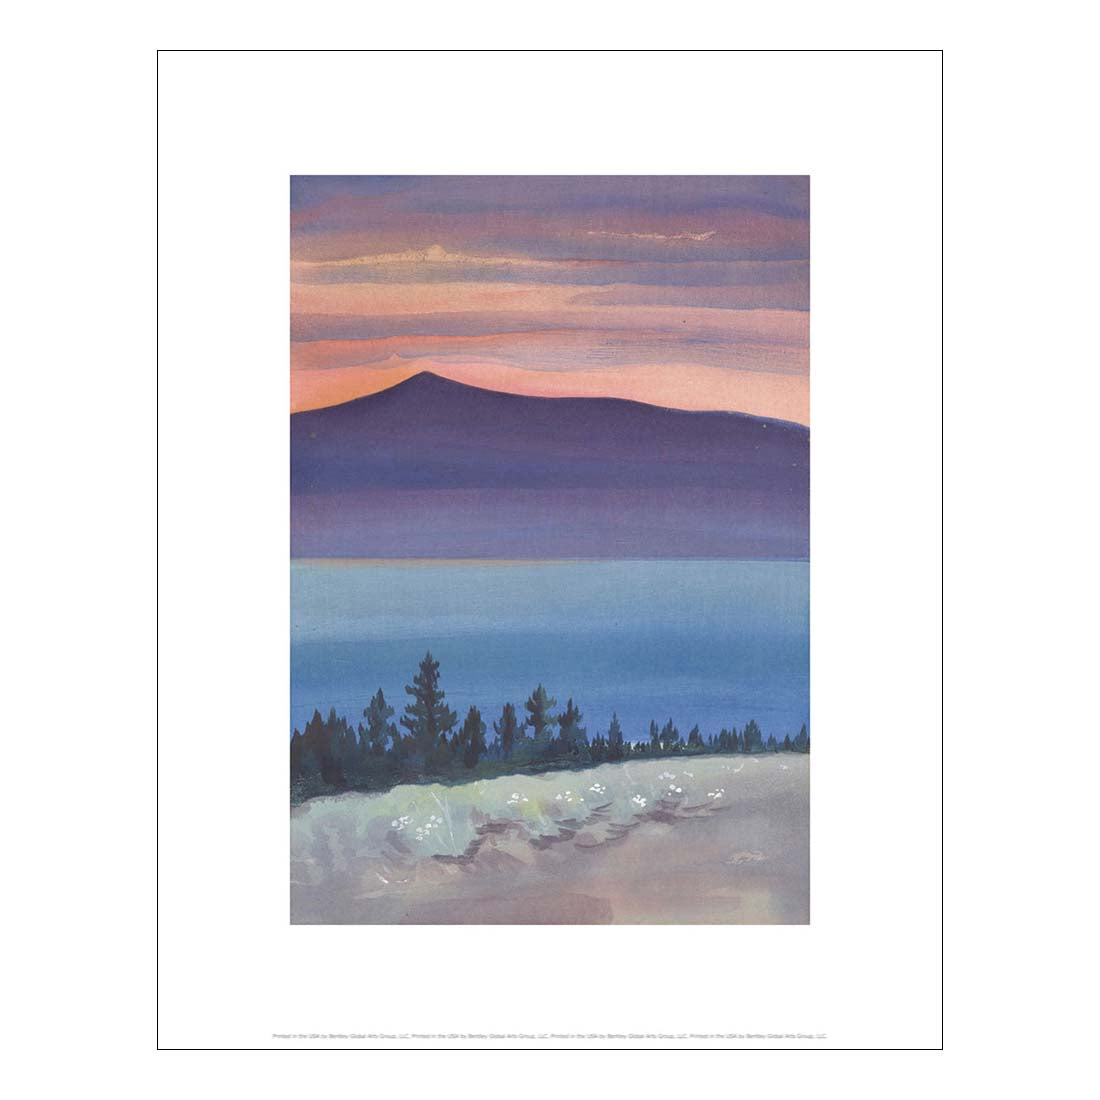 Obata Evening Glow of Mono Lake Print